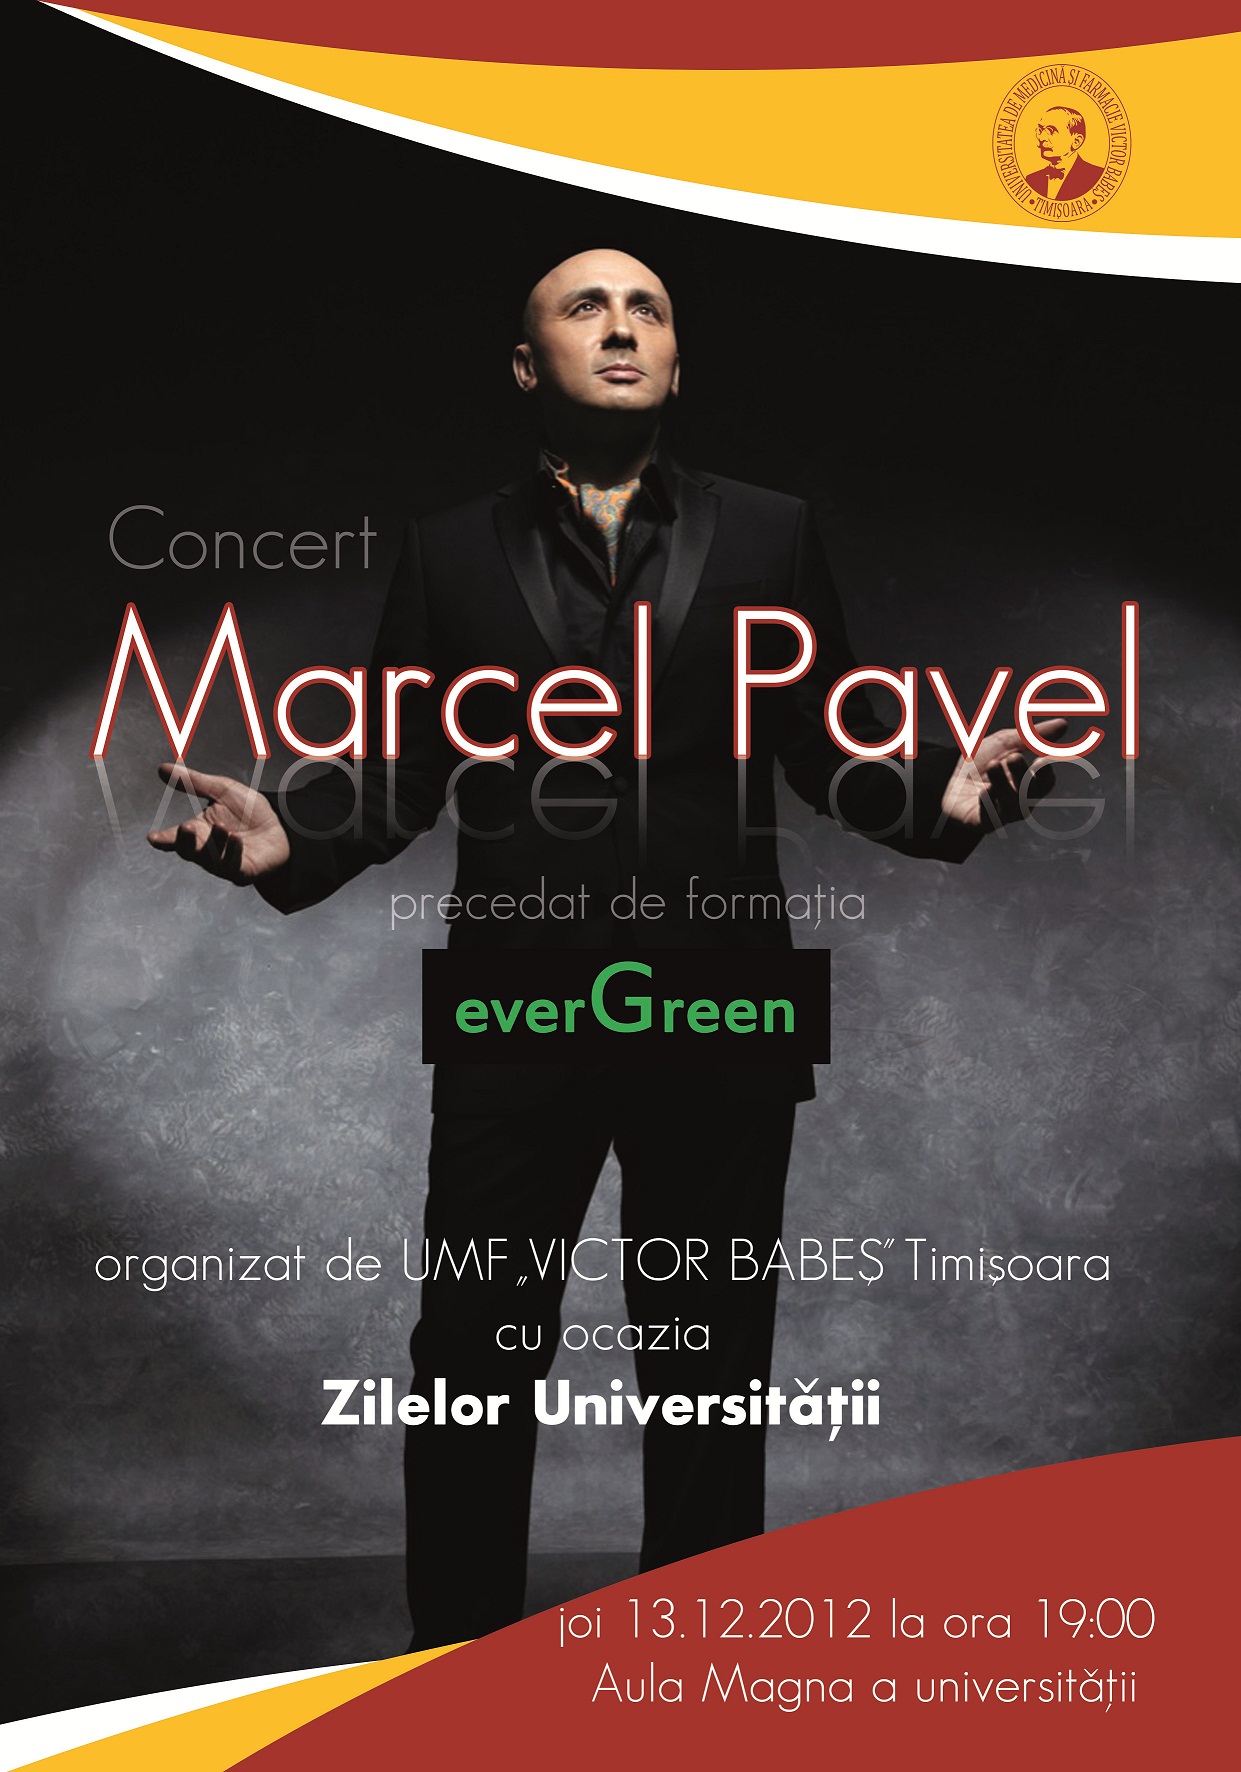 Concert Marcel Pavel - 13.12.2012